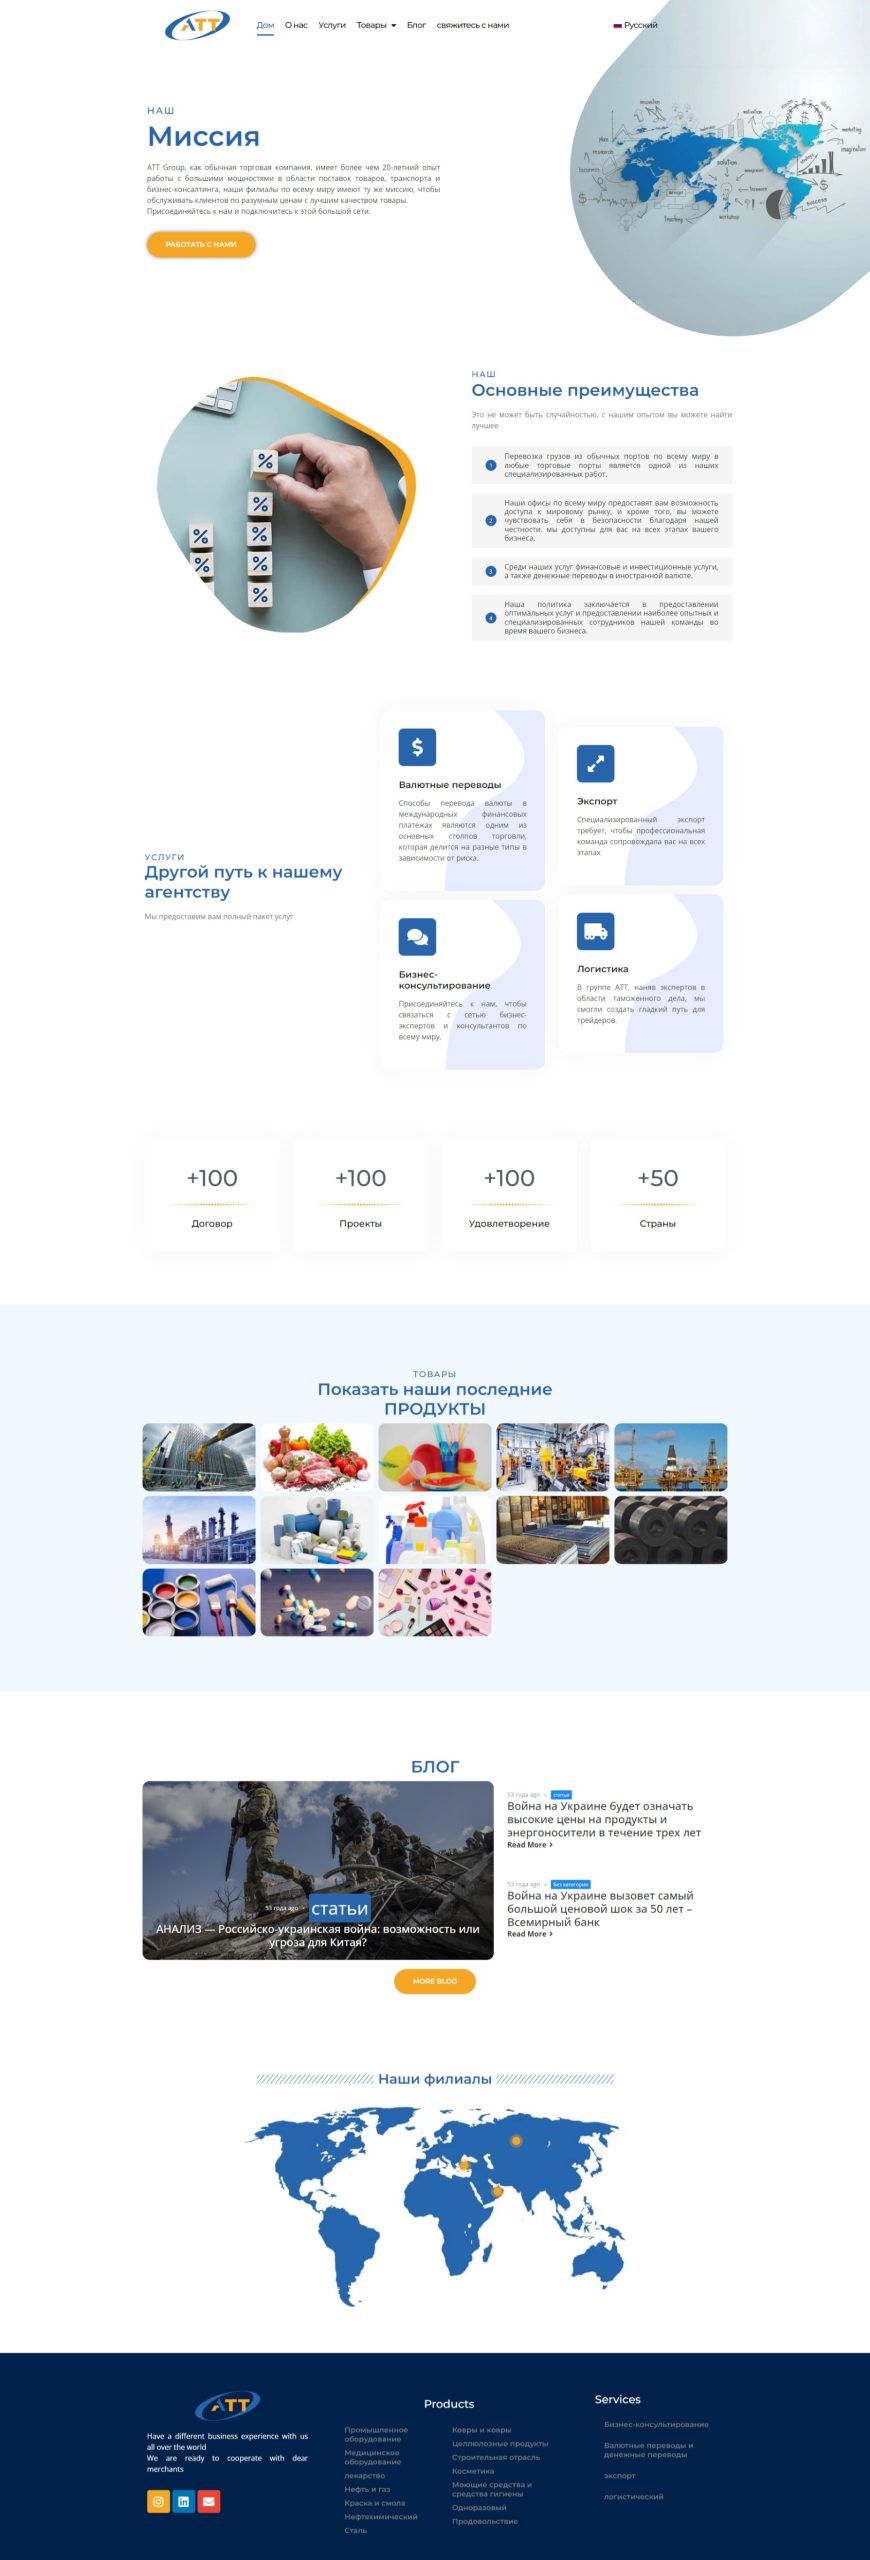 طراحی وب سایت شرکت بازرگانی attqgroup [ سه زبانه ] | طراحی وب سایت, نمونه کار